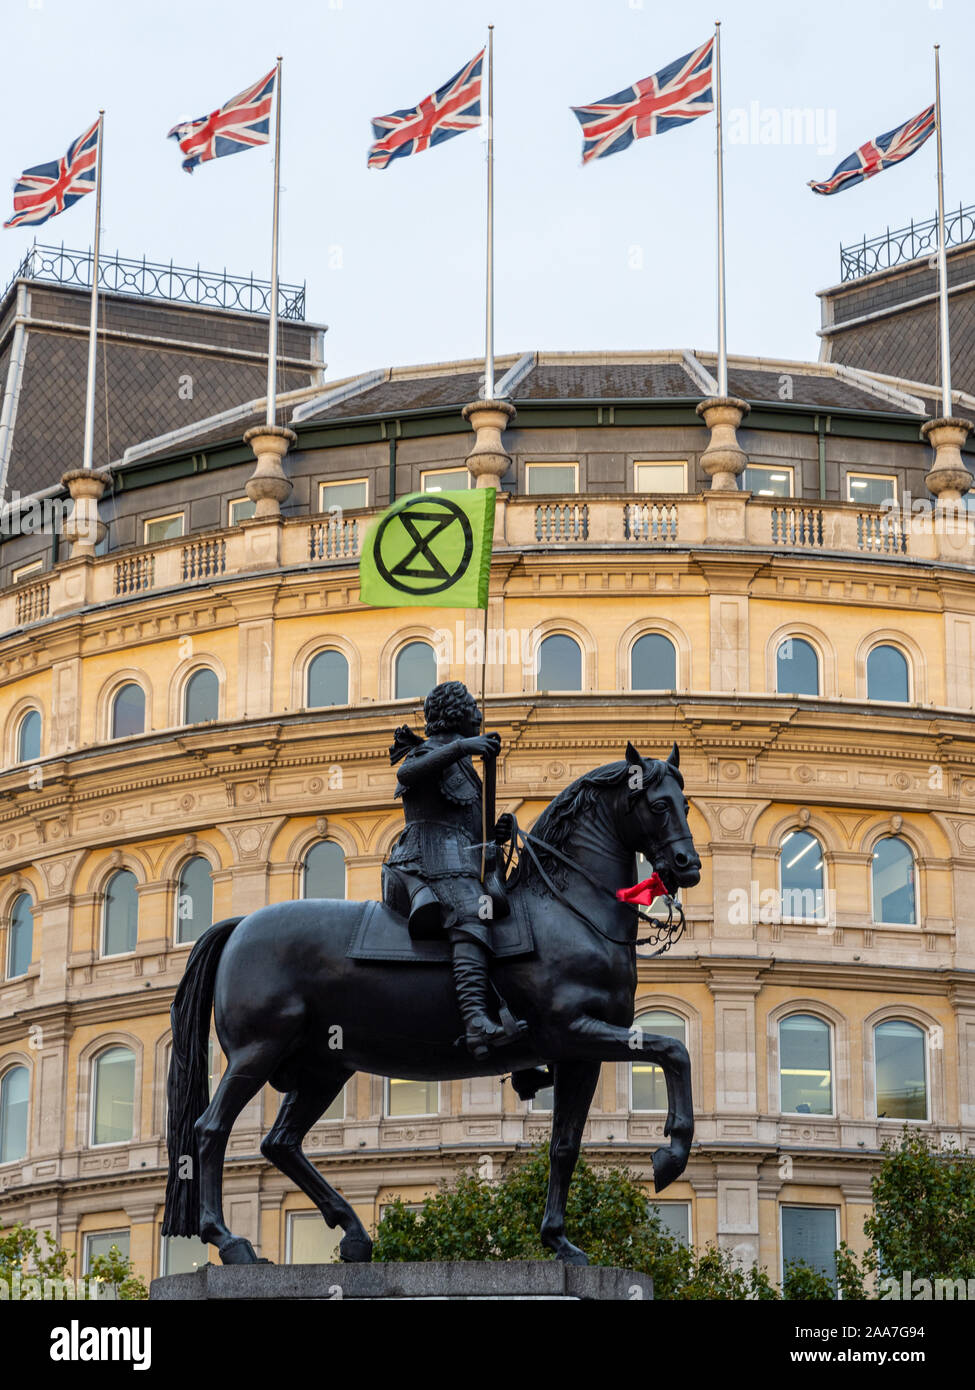 Londres, Inglaterra, Reino Unido - 10 de octubre de 2019: La estatua ecuestre de Carlos I lleva una bandera de rebelión de extinción durante las protestas en la Plaza Trafalgar en Foto de stock